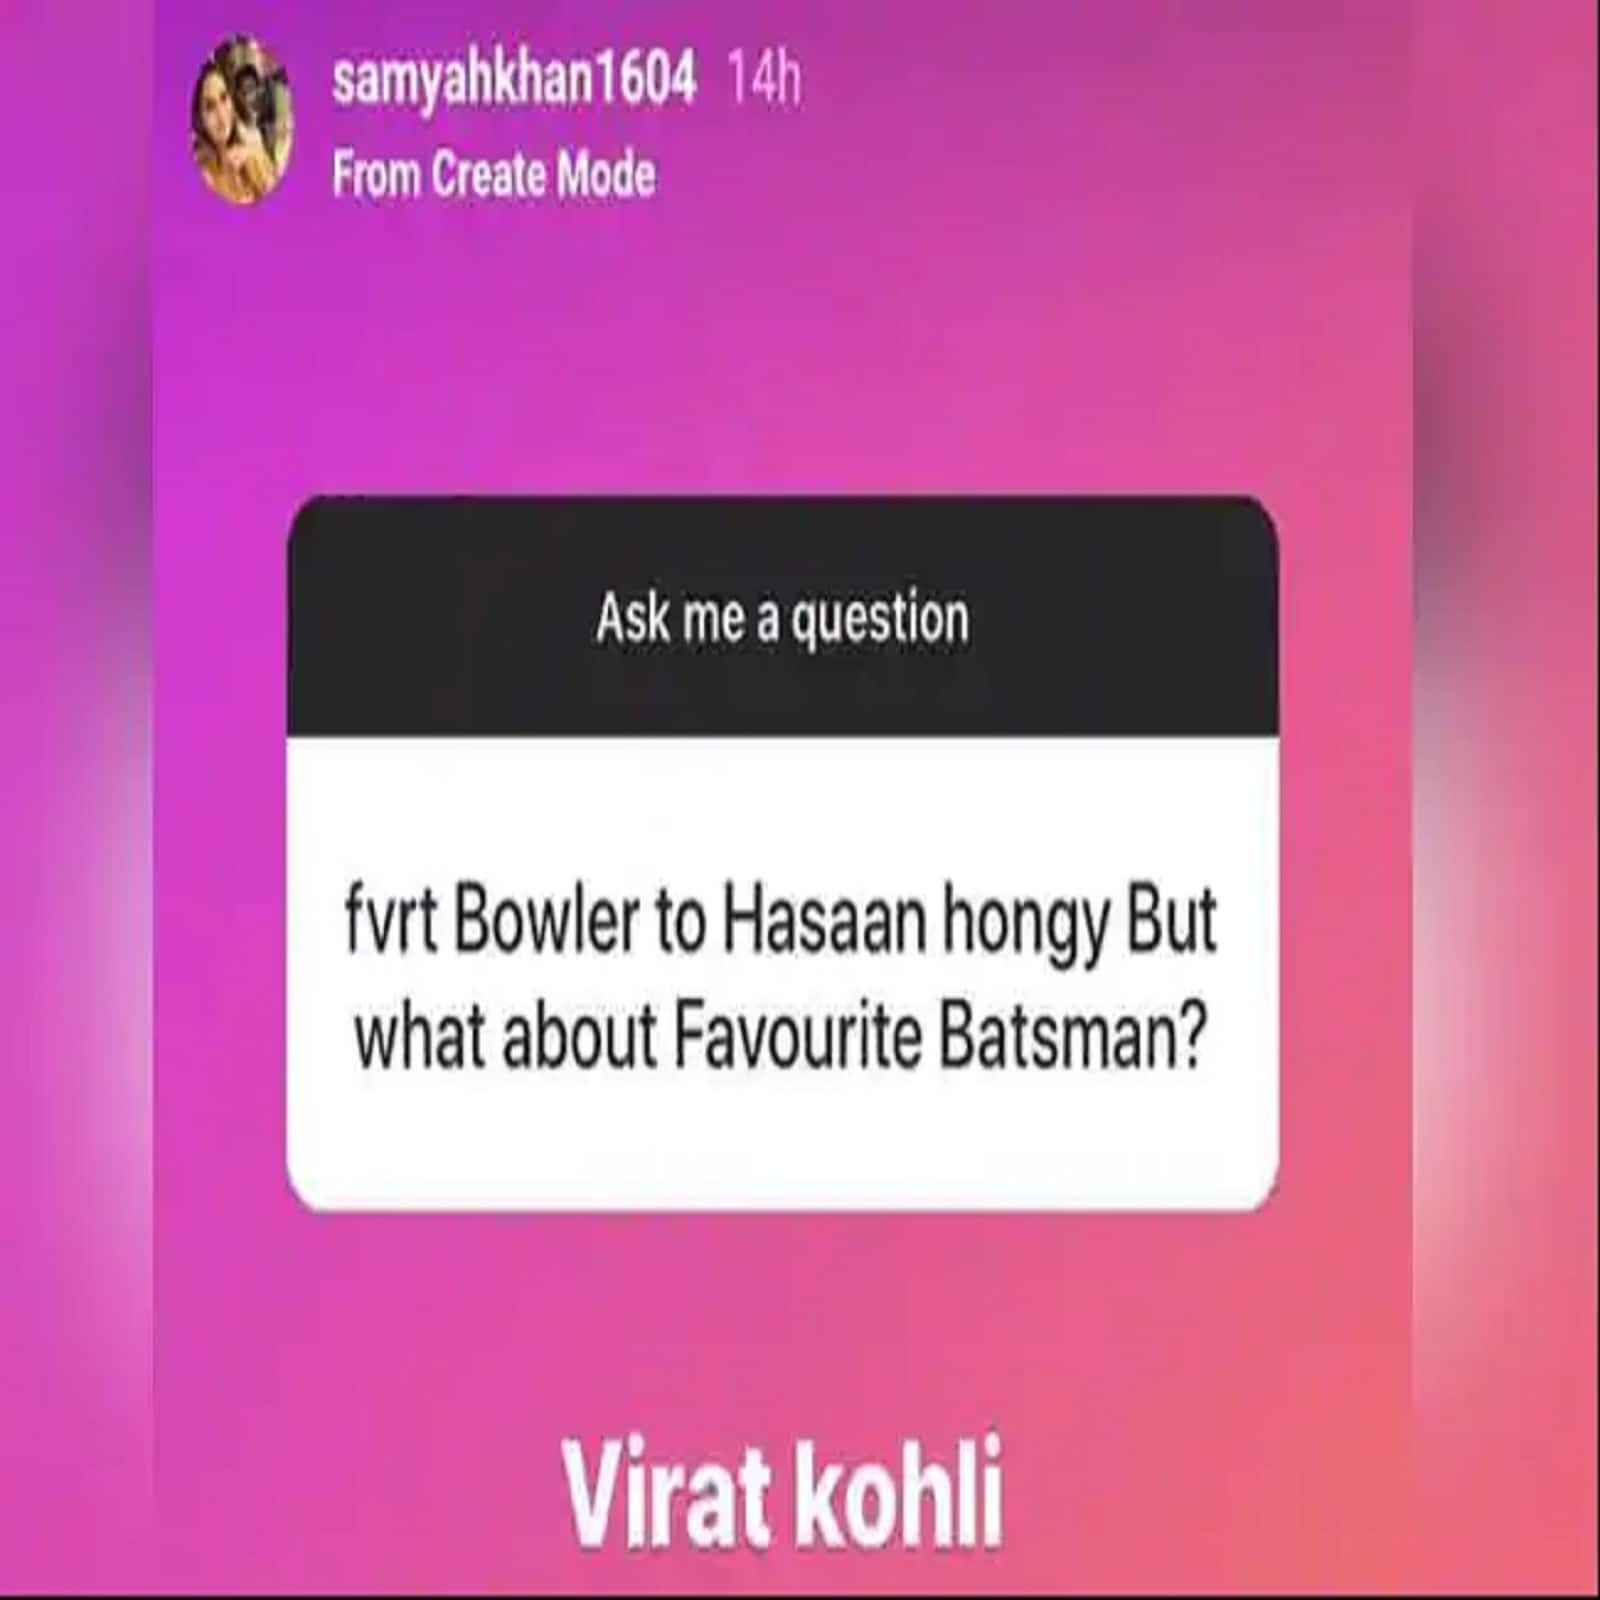  शामिया आरजू ने अपने ऑफिशियल इंस्टाग्राम पर फैन्स के साथ बातचीत के सेशन में इस बात का खुलासा किया था कि वह विराट कोहली की बड़ी फैन हैं. उन्होंने विराट कोहली को अपना फेवरेट बल्लेबाज बताया था. (Samiya Hassan Ali/Instagram)